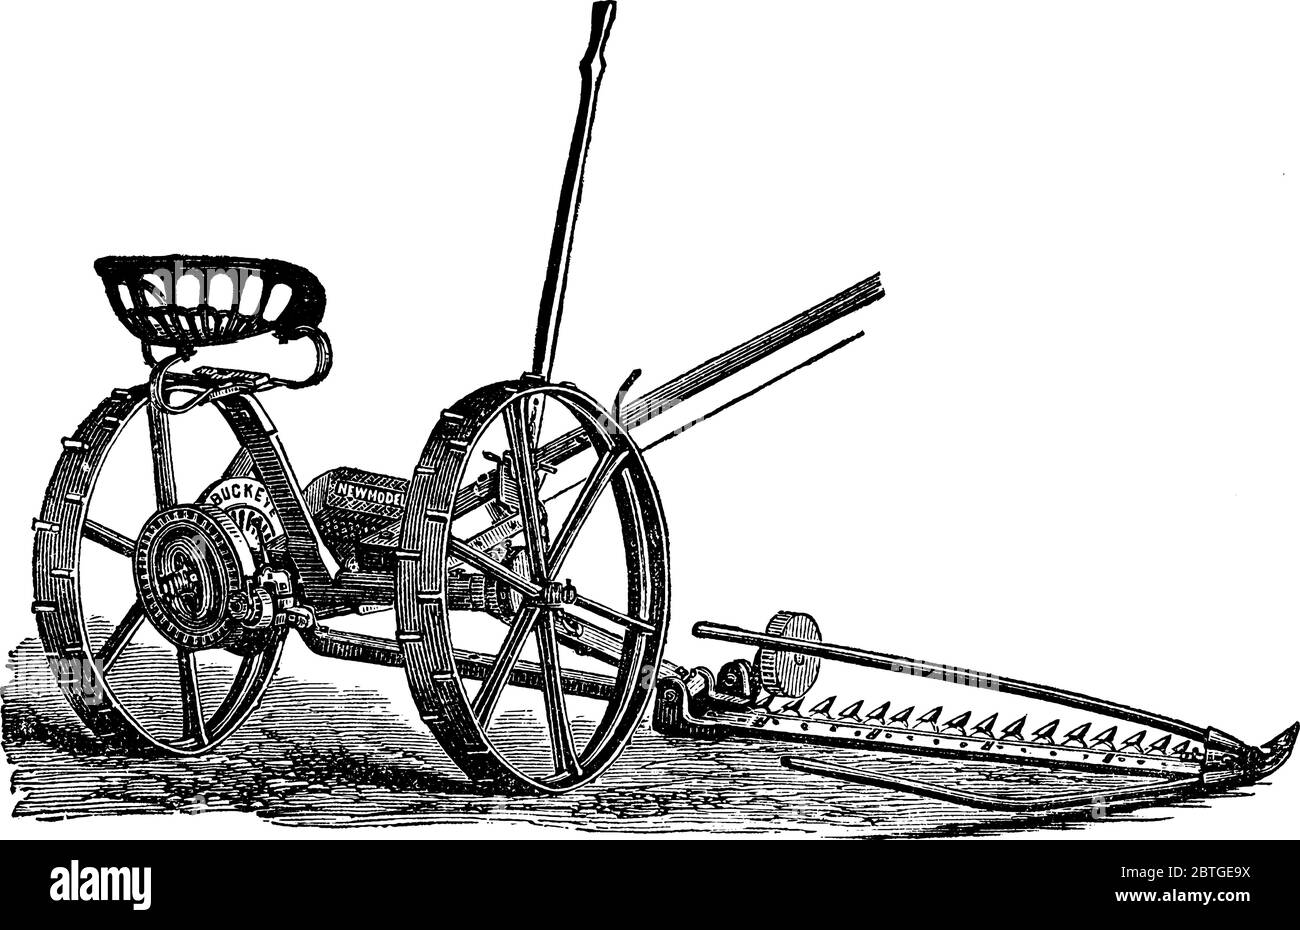 Buckeye Mäher sind Maschinen in der landwirtschaftlichen Industrie verwendet, um Gras oder Kulturen zu schneiden, erste im Jahr 1899 von Buckeye Mower hergestellt., Vintage-Linie drawin Stock Vektor